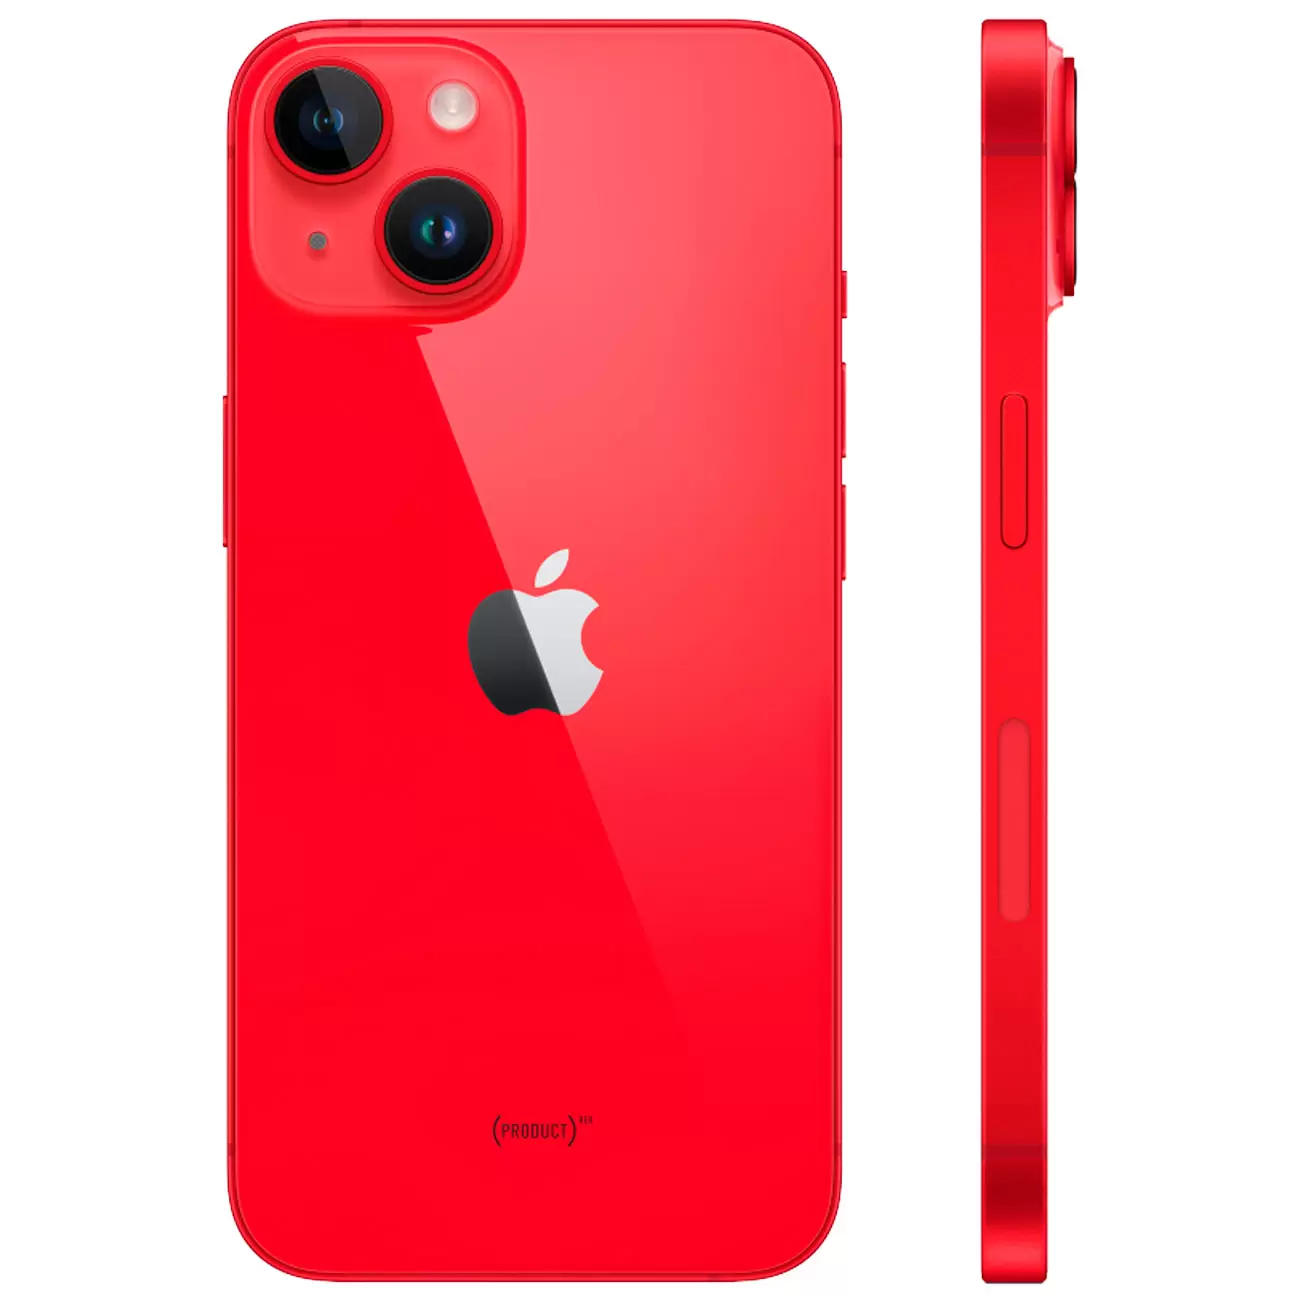 Купить смартфон apple iphone 14 plus 256gb (product)red Apple iPhone 14 Plus в официальном магазине Apple, Samsung, Xiaomi. iPixel.ru Купить, заказ, кредит, рассрочка, отзывы,  характеристики, цена,  фотографии, в подарок.